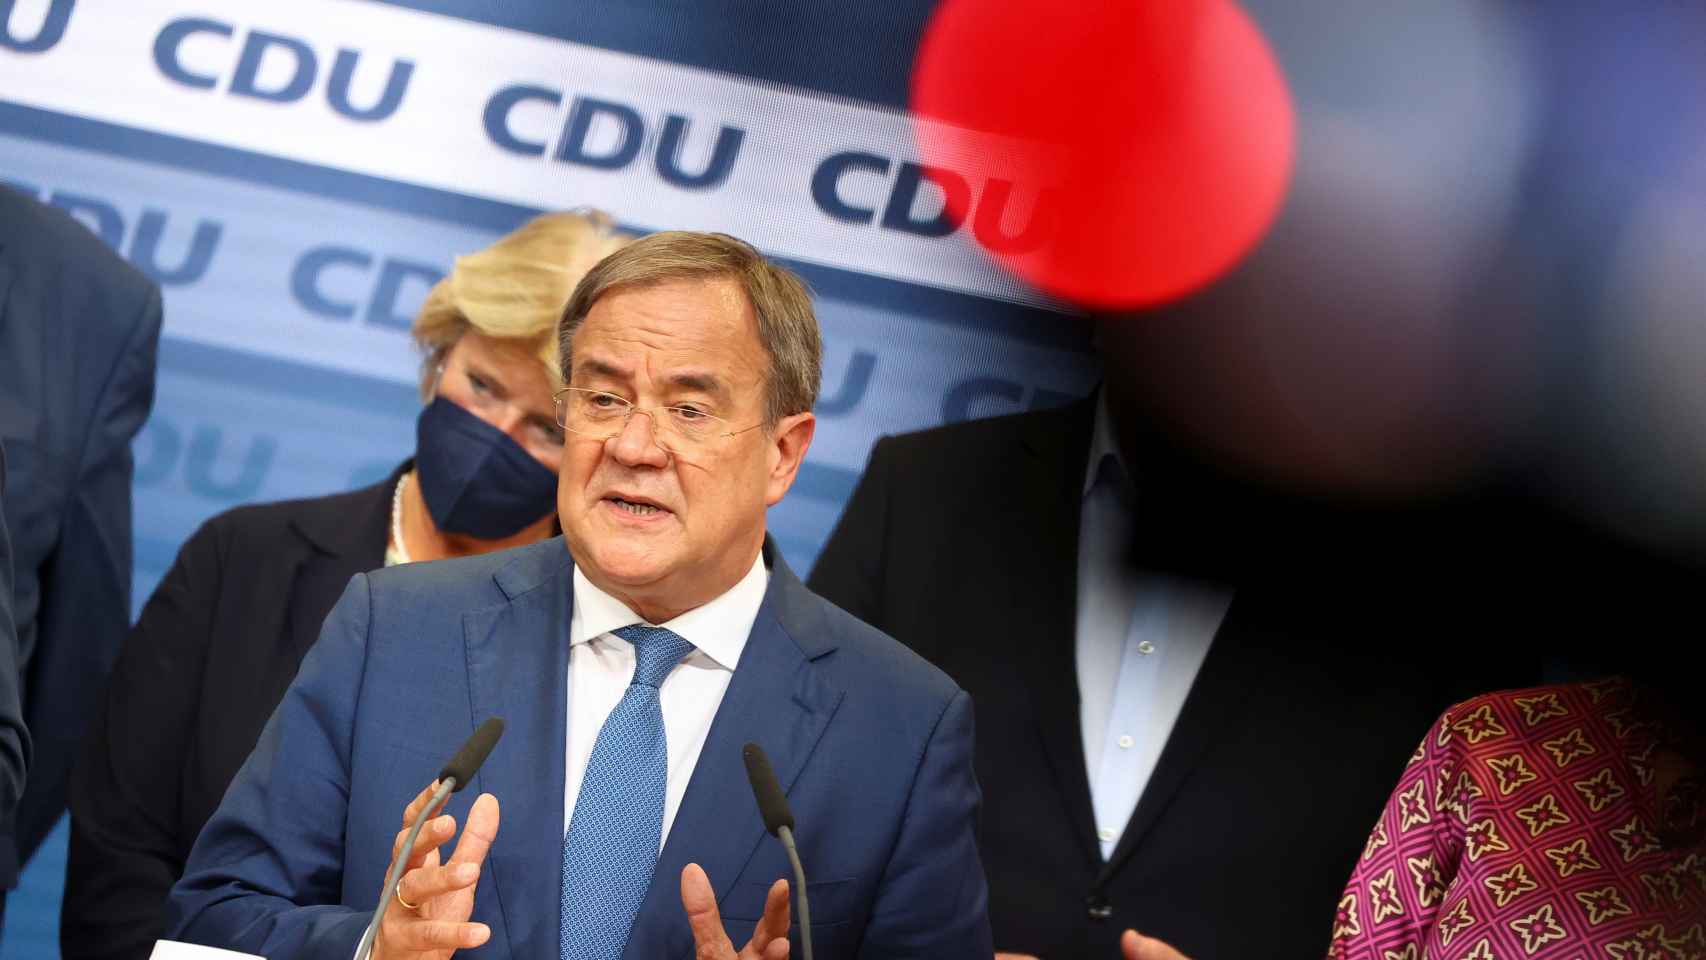 El líder del CDU, Armin Laschet, en una imagen de archivo.